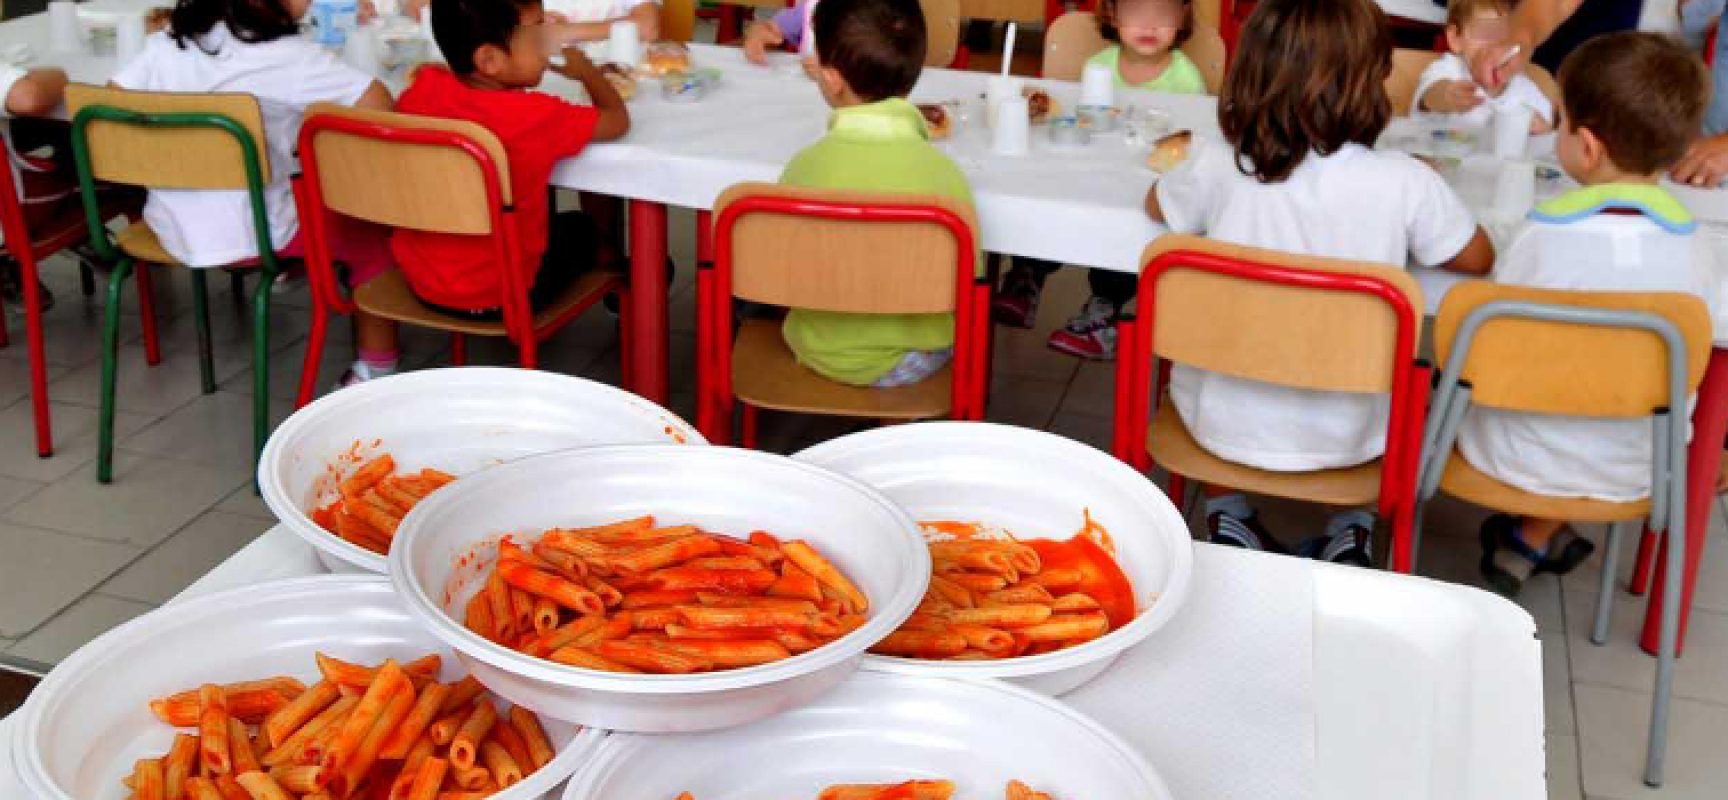 Refezione scolastica, rimborso buoni pasto non utilizzati causa pandemia: come fare domanda